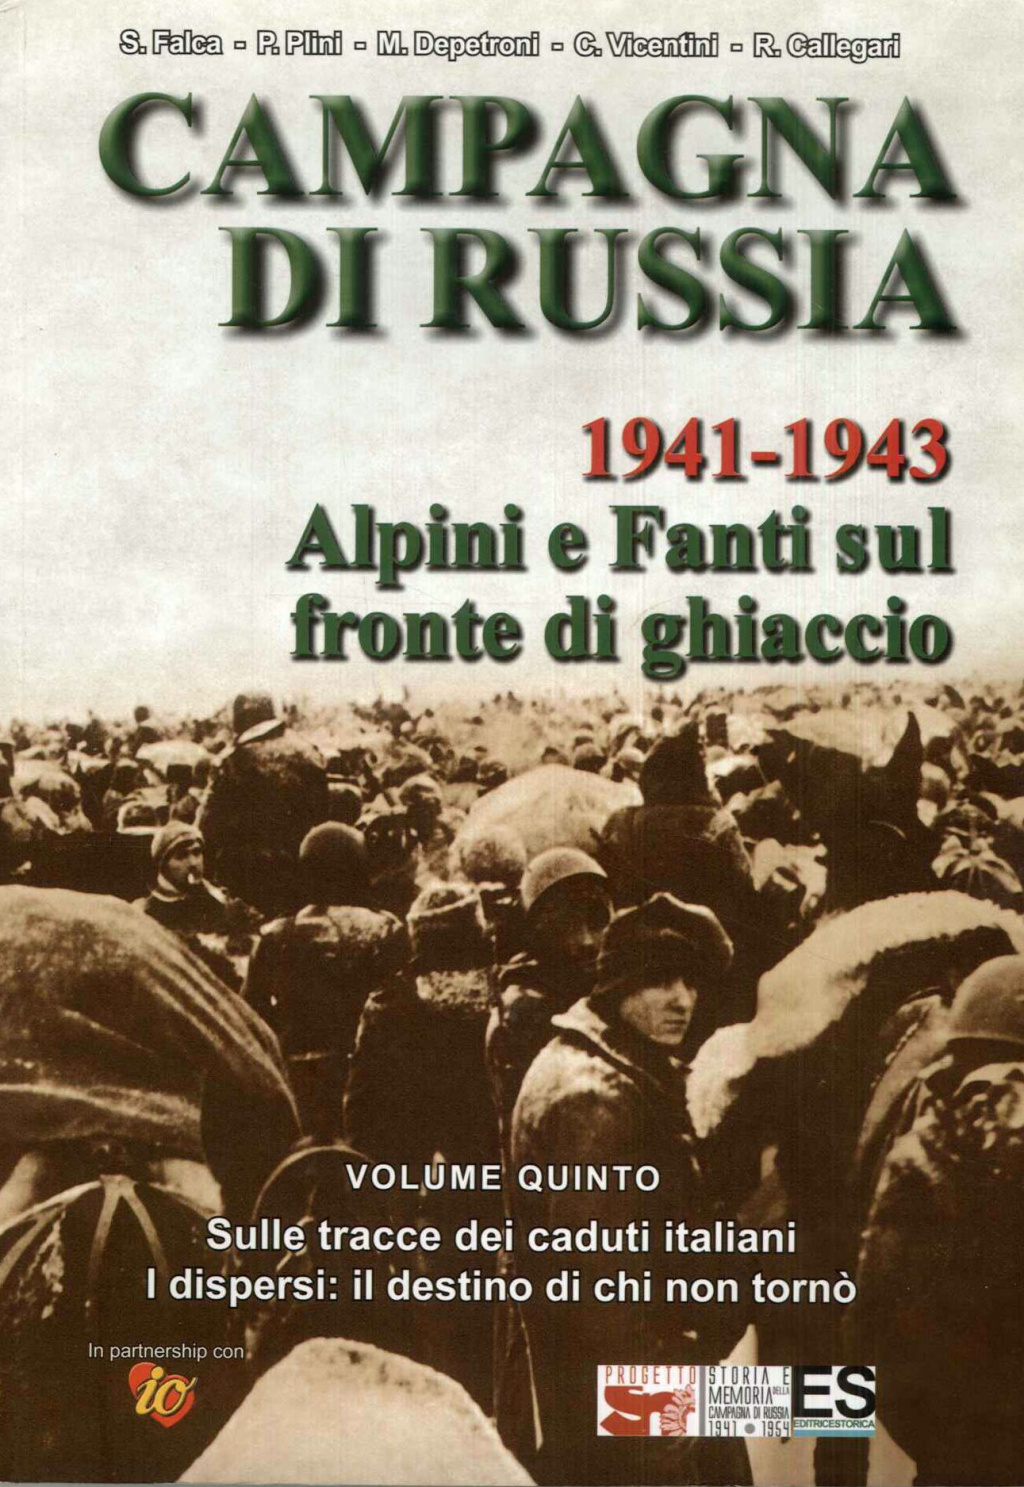 La Campagna di Russia 1941-1943. Alpini e fanti sul fronte di ghiaccio. Volume 5. Sulle tracce dei caduti italiani. I dispersi: il destino di chi non tornò.